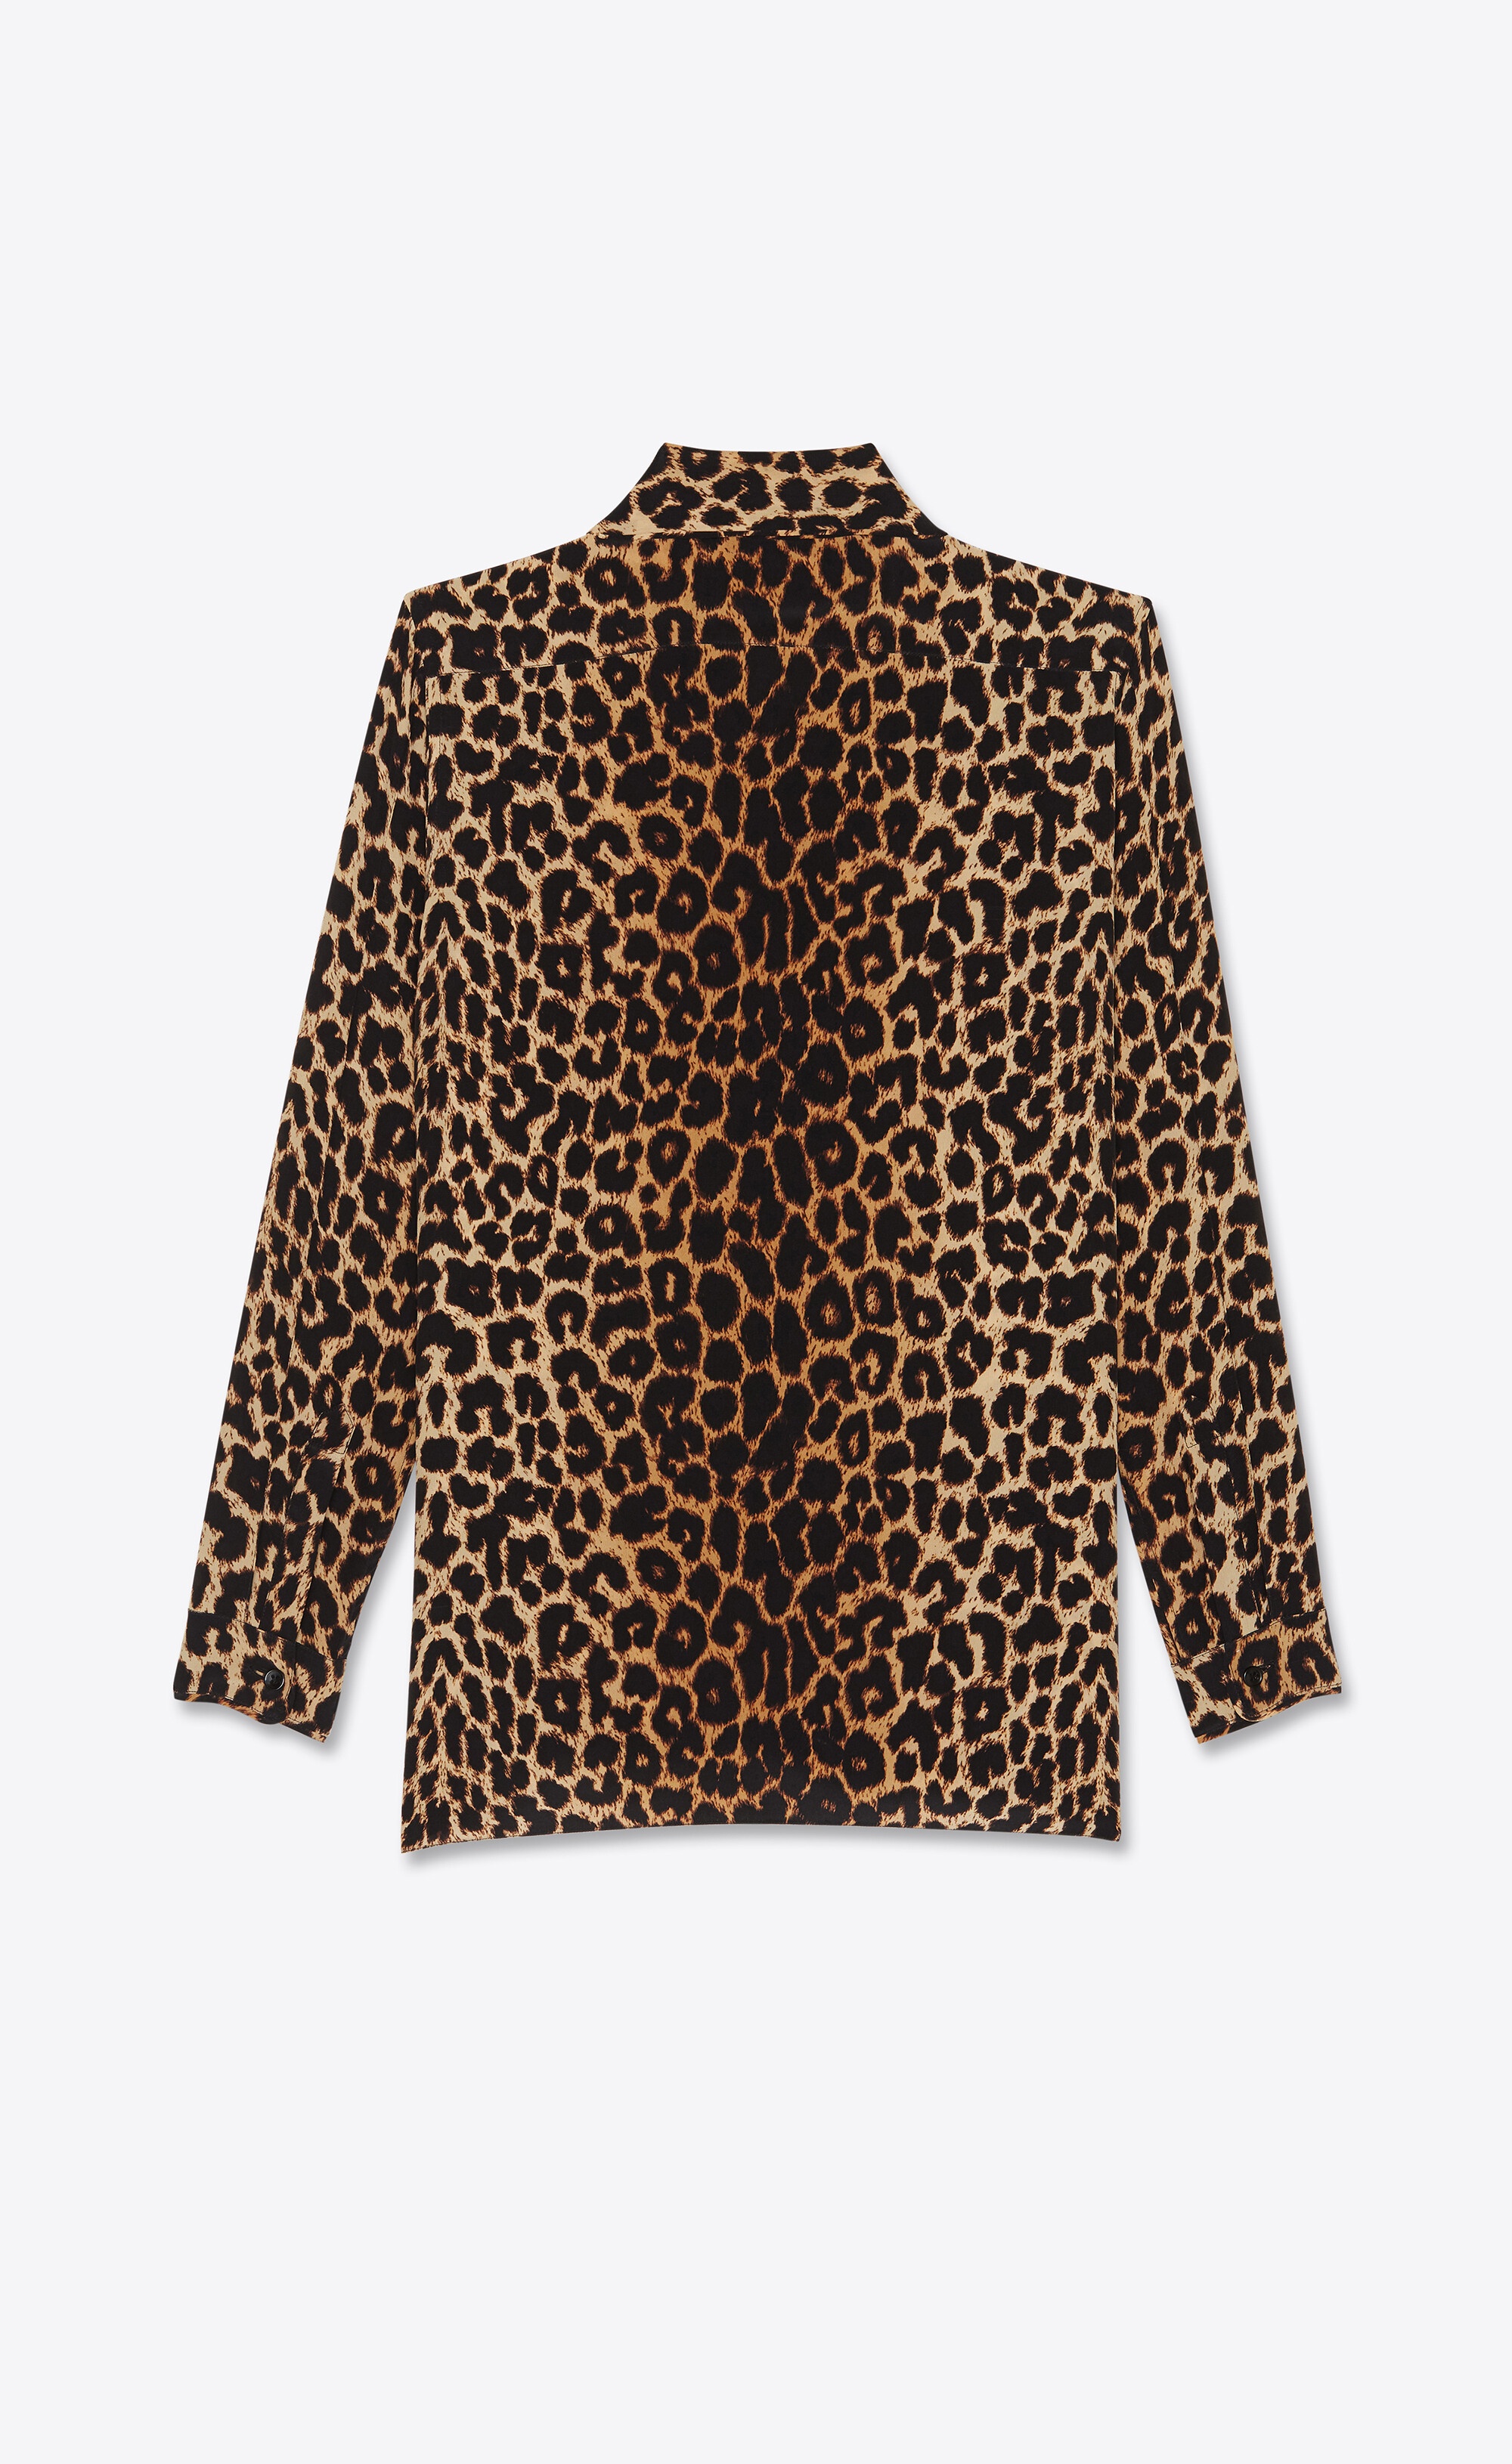 lavallière-neck shirt in leopard-print silk crepe de chine - 2